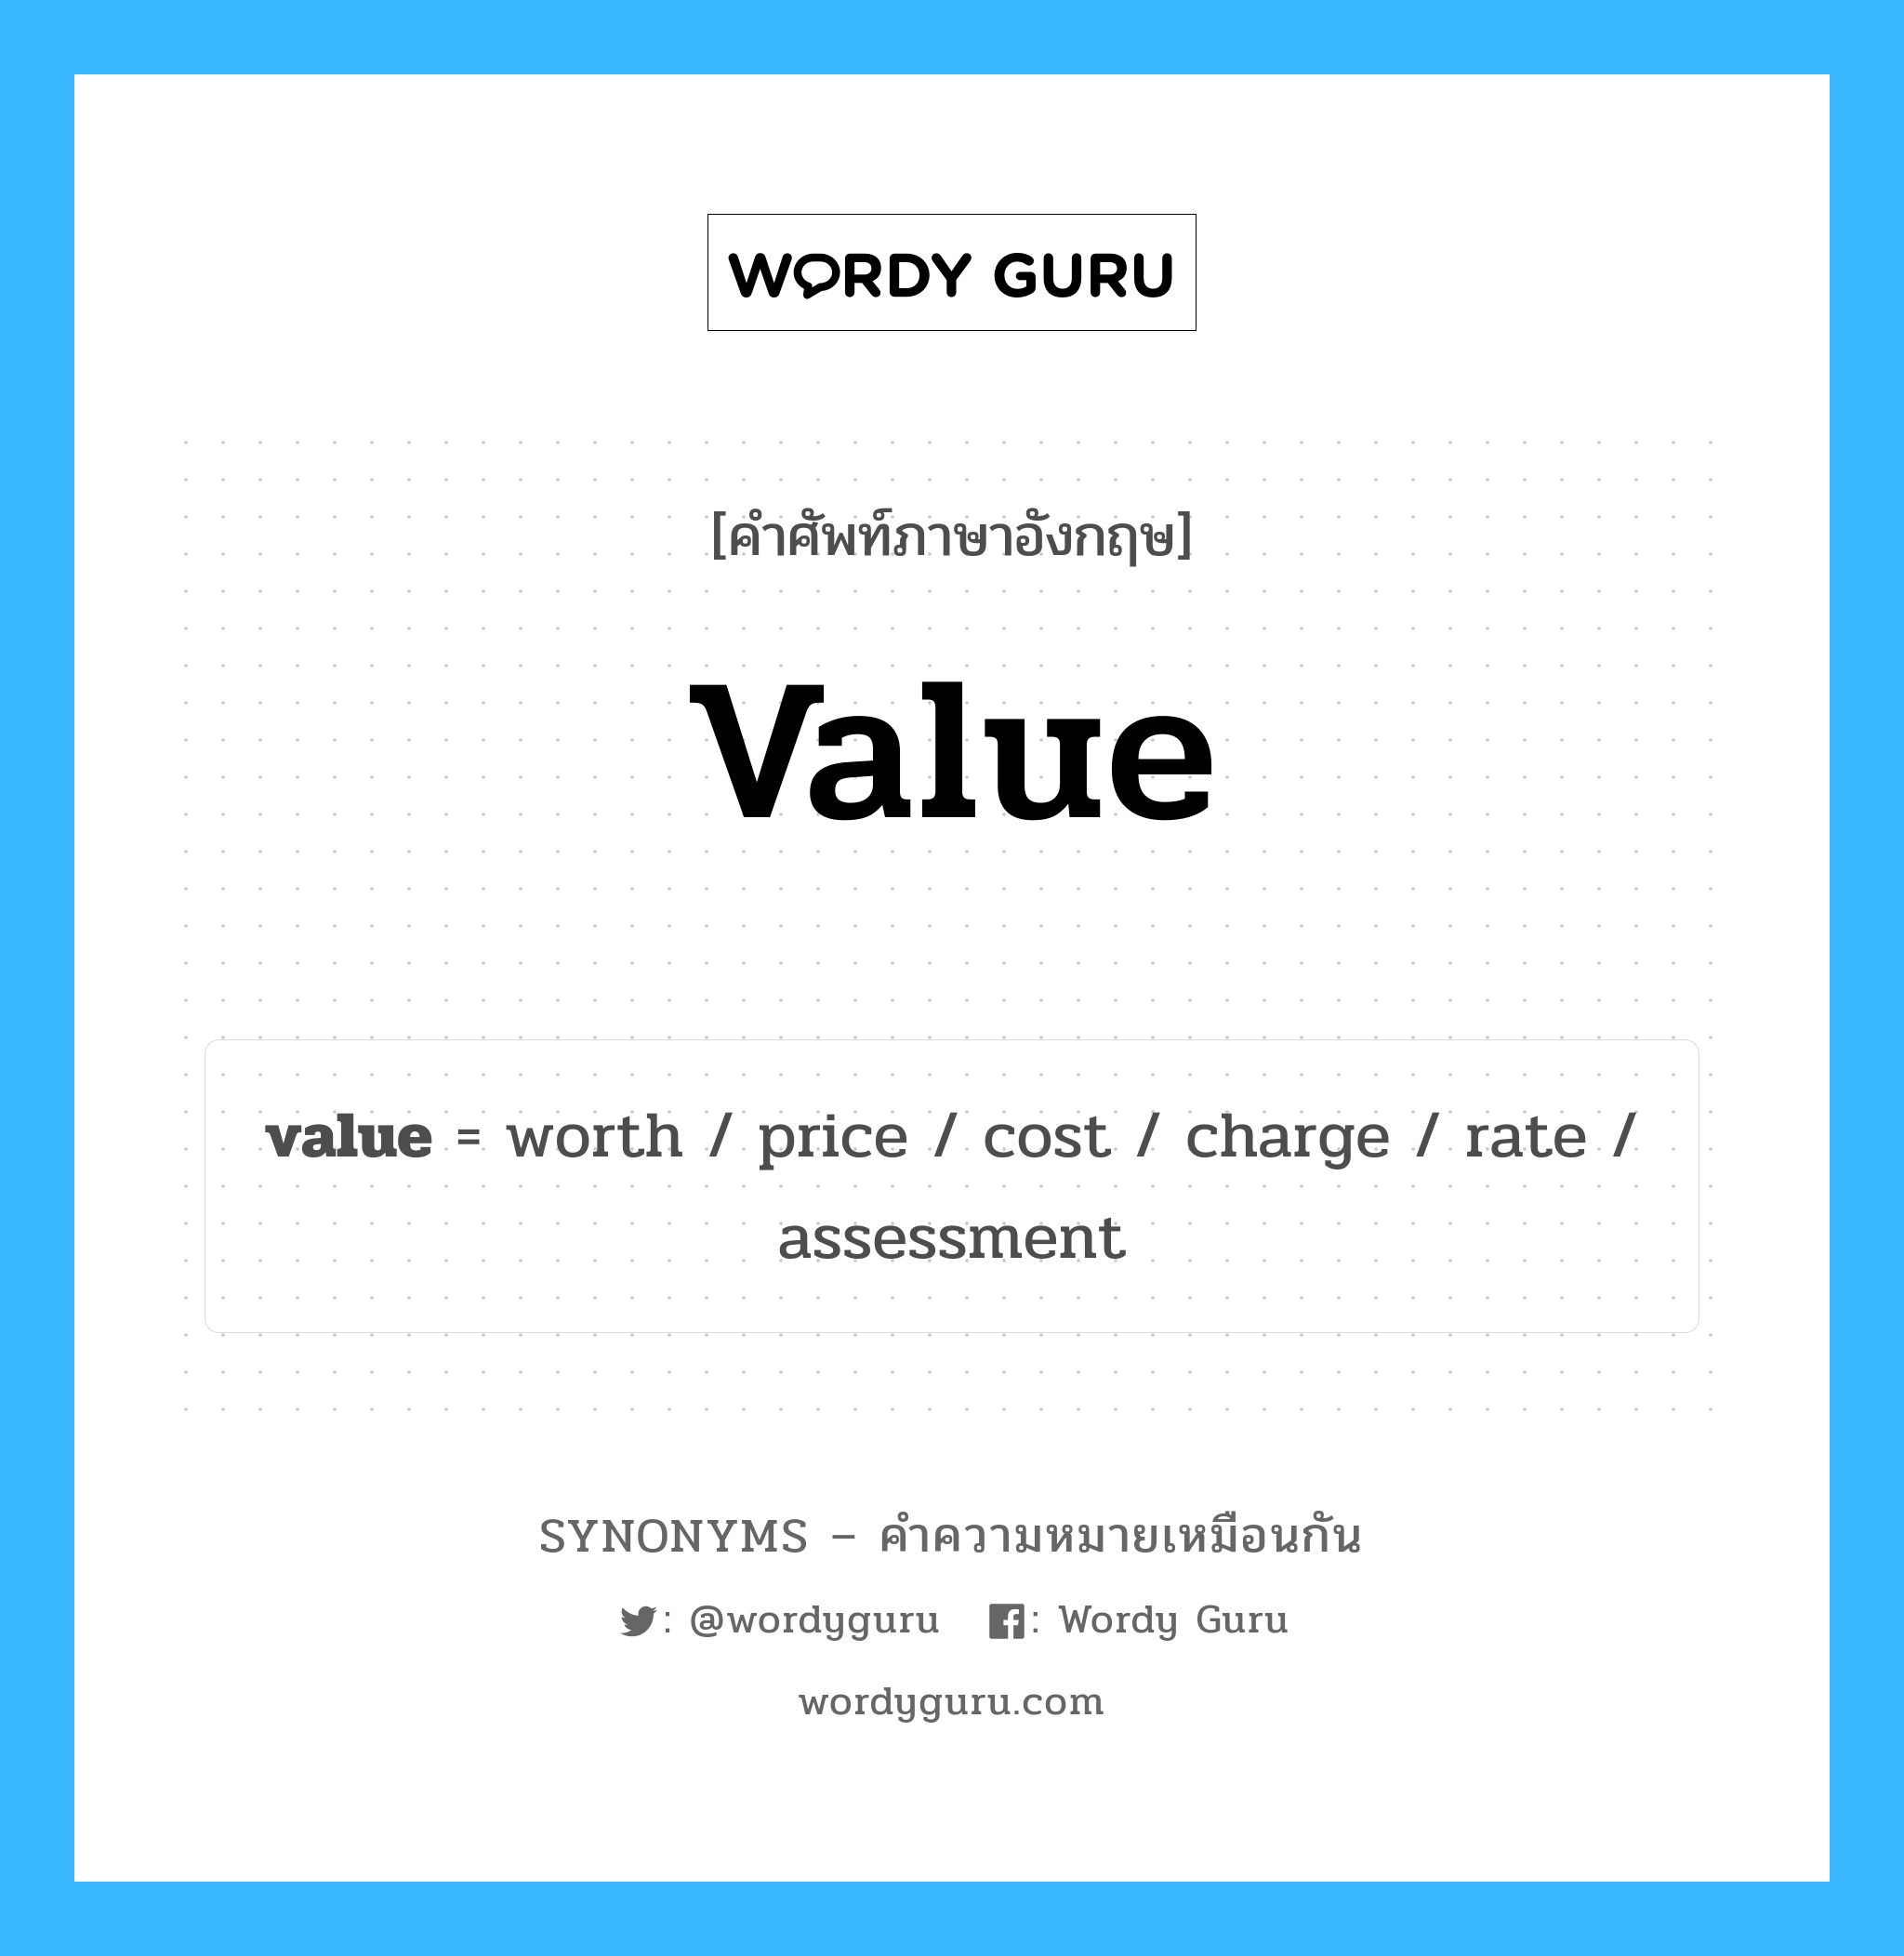 value เป็นหนึ่งใน worth และมีคำอื่น ๆ อีกดังนี้, คำศัพท์ภาษาอังกฤษ value ความหมายคล้ายกันกับ worth แปลว่า คุ้มค่า หมวด worth